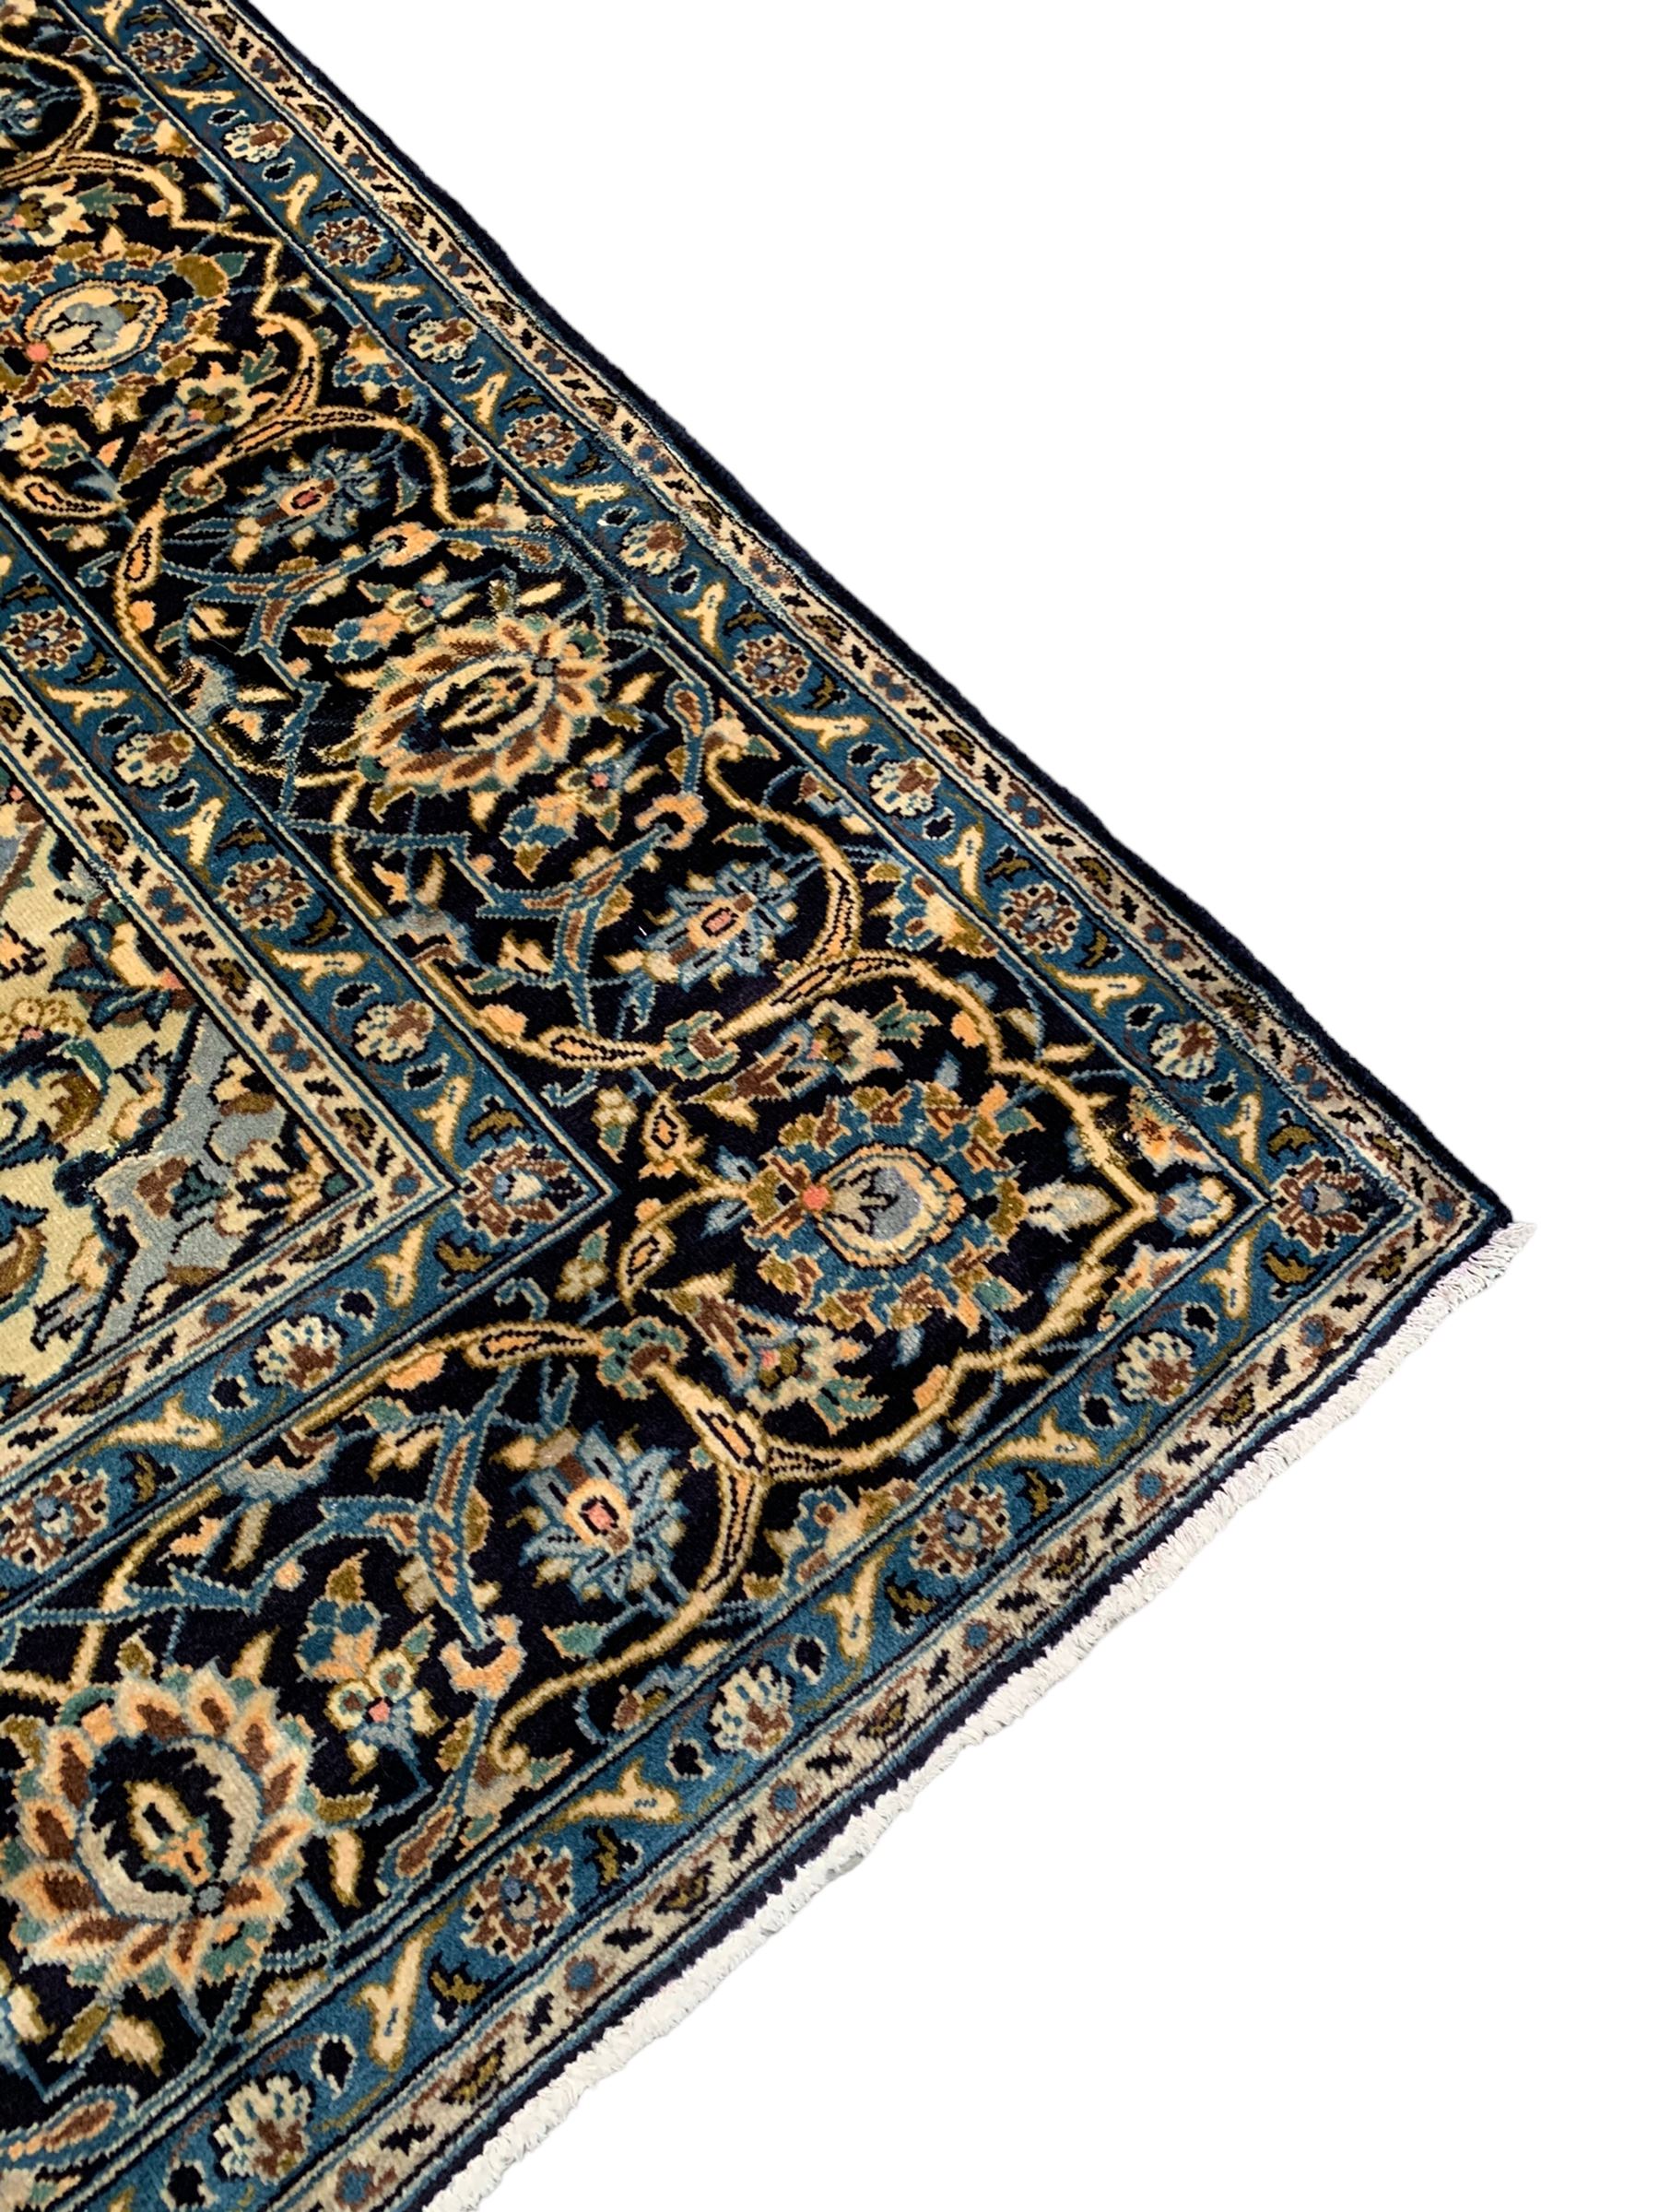 Persian Kashan indigo ground carpet - Image 9 of 10